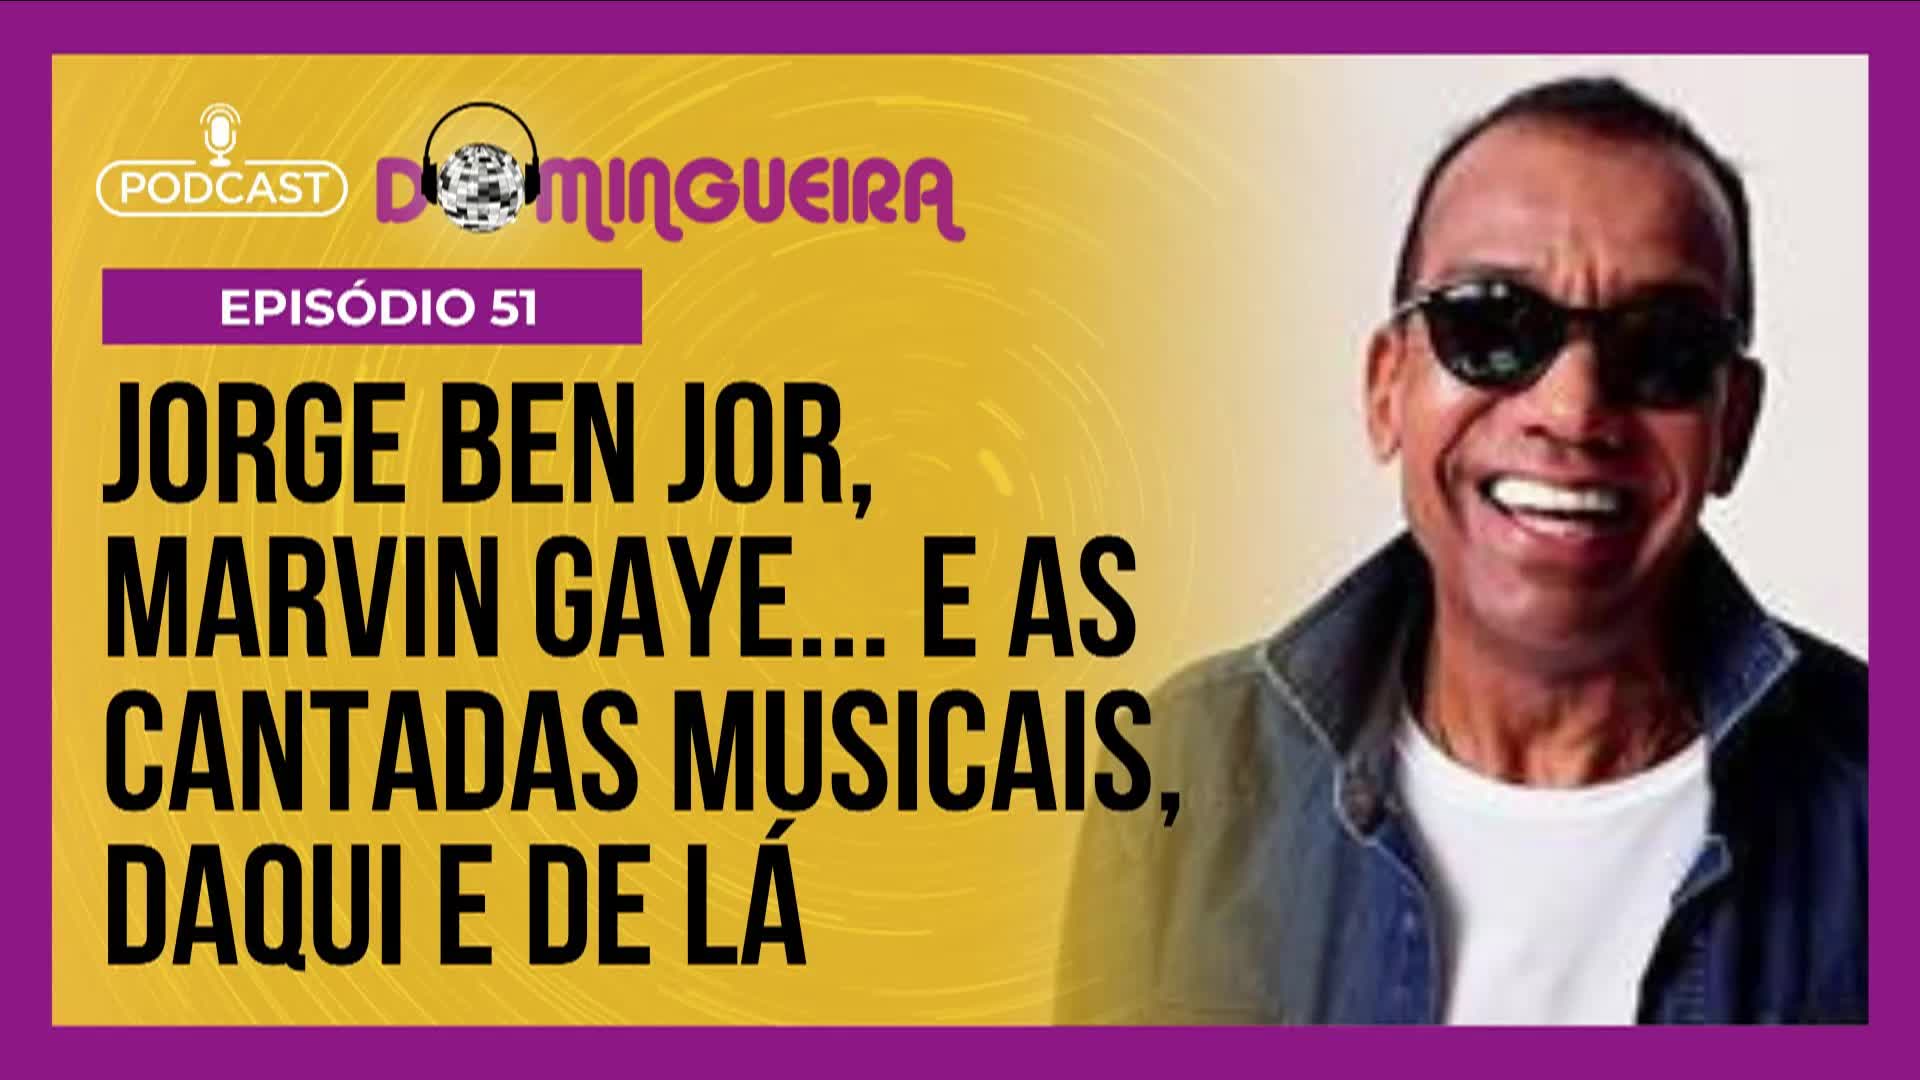 Vídeo: Podcast Domingueira : Jorge Ben Jor e Marvin Gaye, acrescentando pimenta à sua cantada